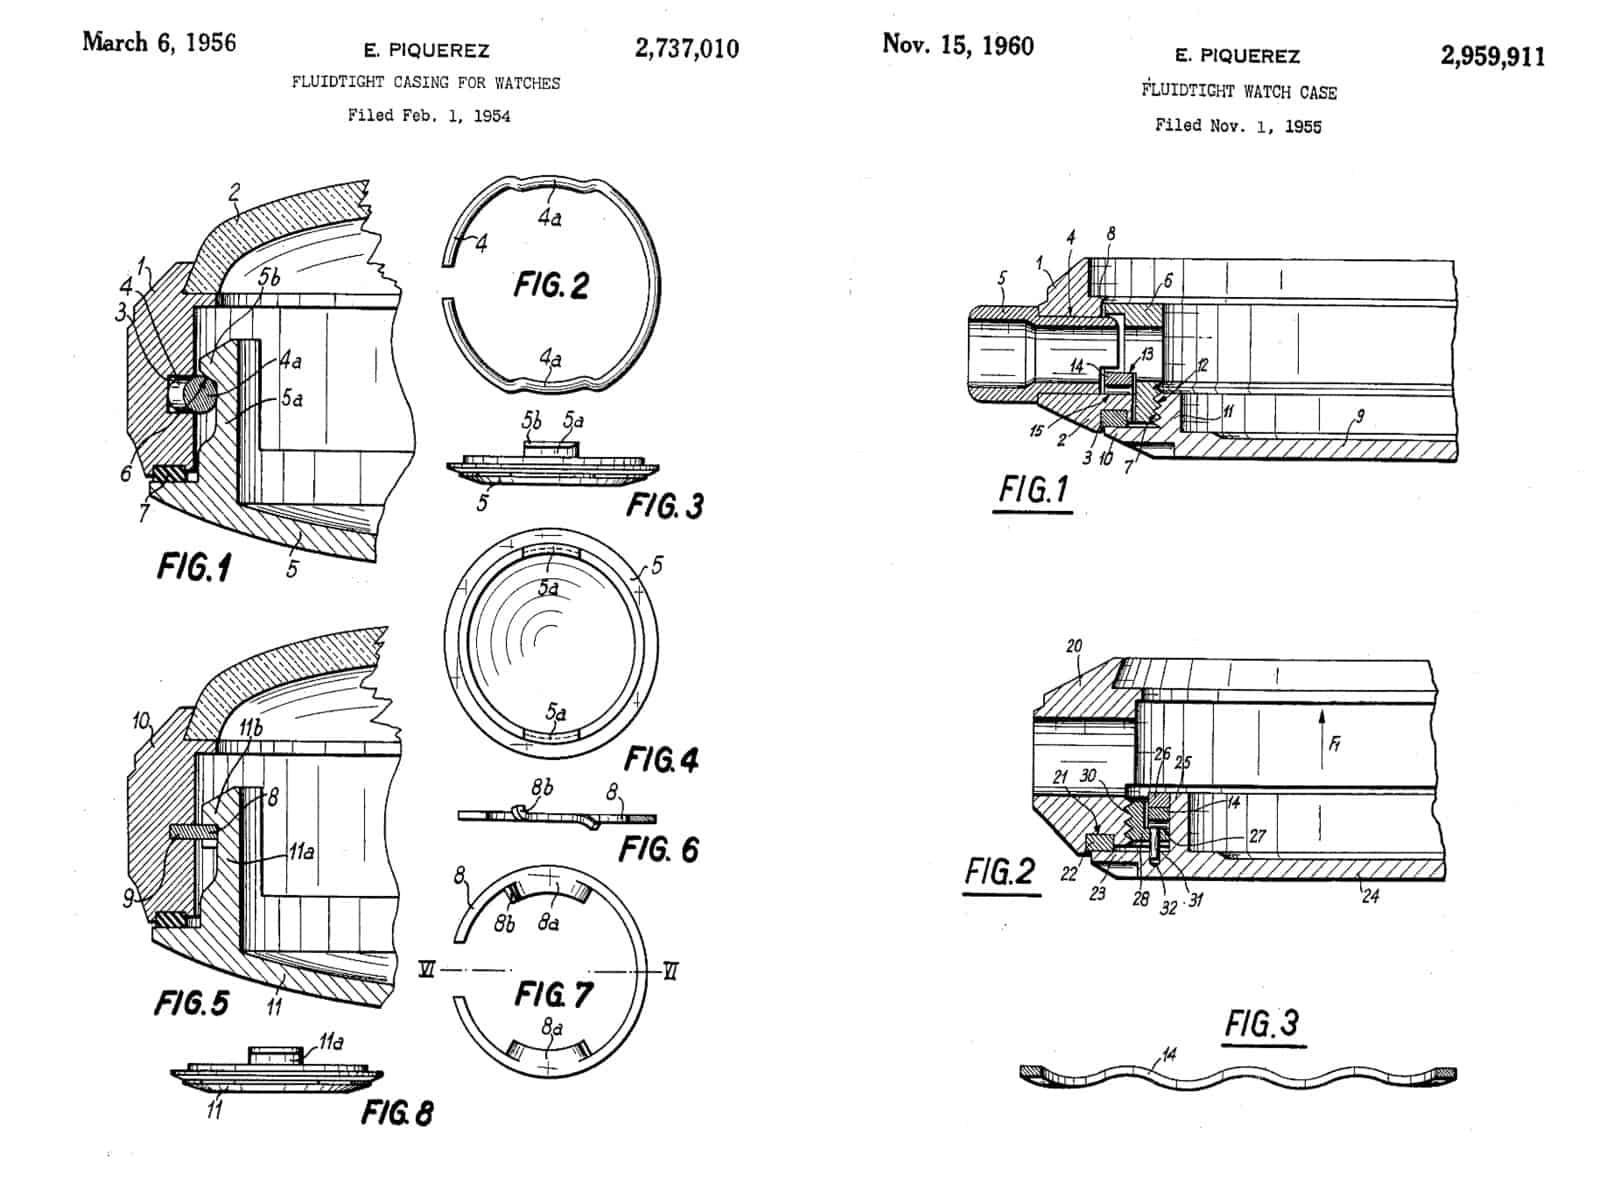 Pantentschriften von E. Piquerez von 1956 und 1960 für das Compressor-Gehäuse